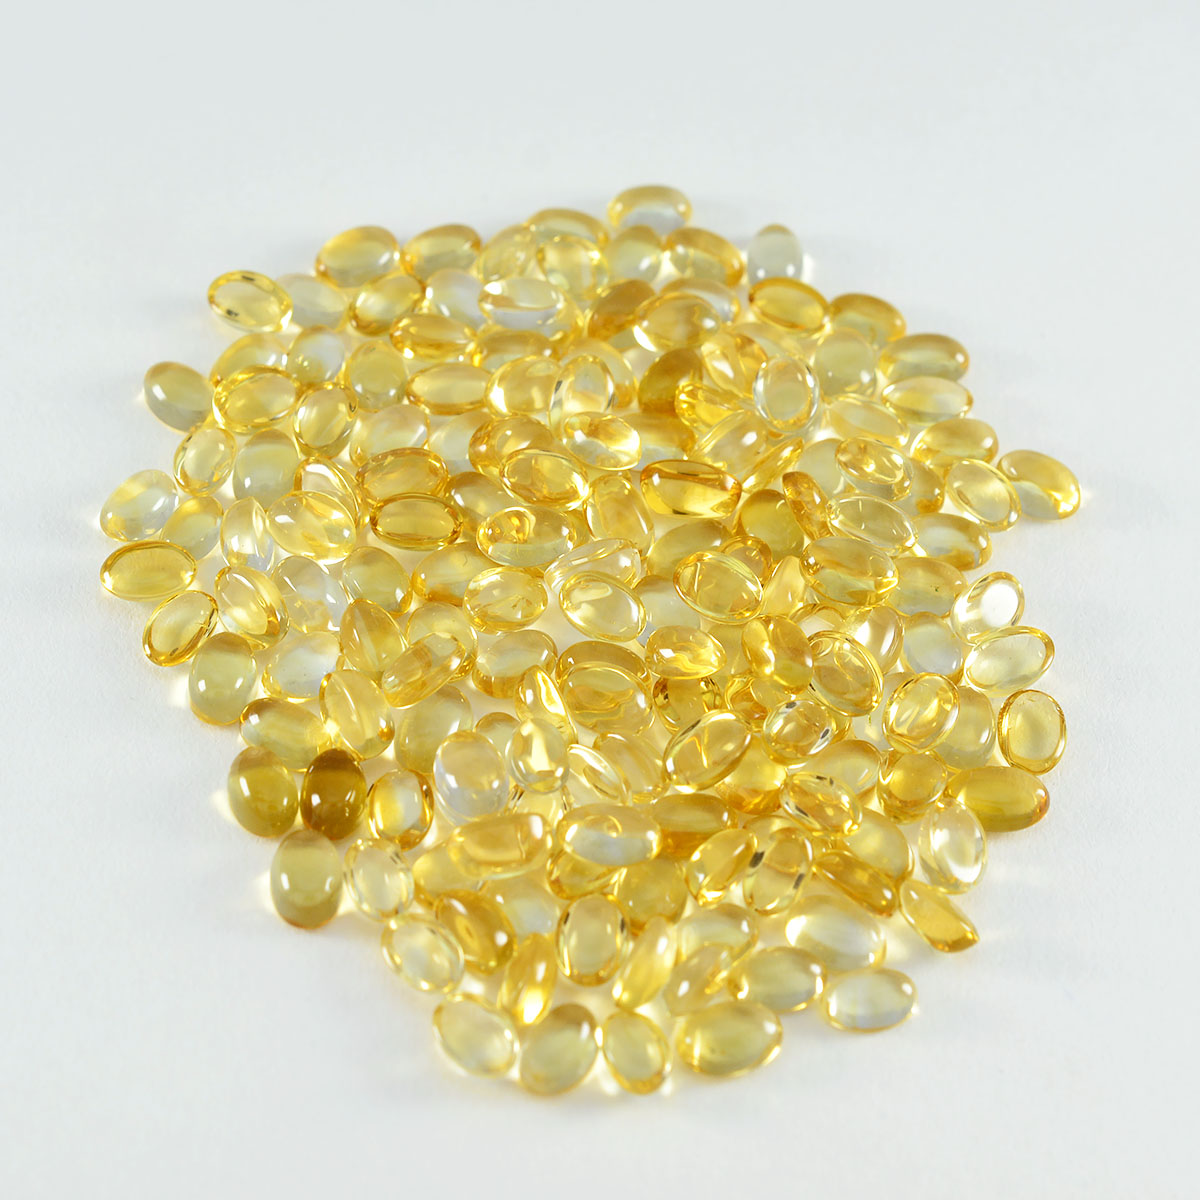 riyogems 1шт желтый цитрин кабошон 3x5 мм овальной формы красивое качество россыпь драгоценных камней